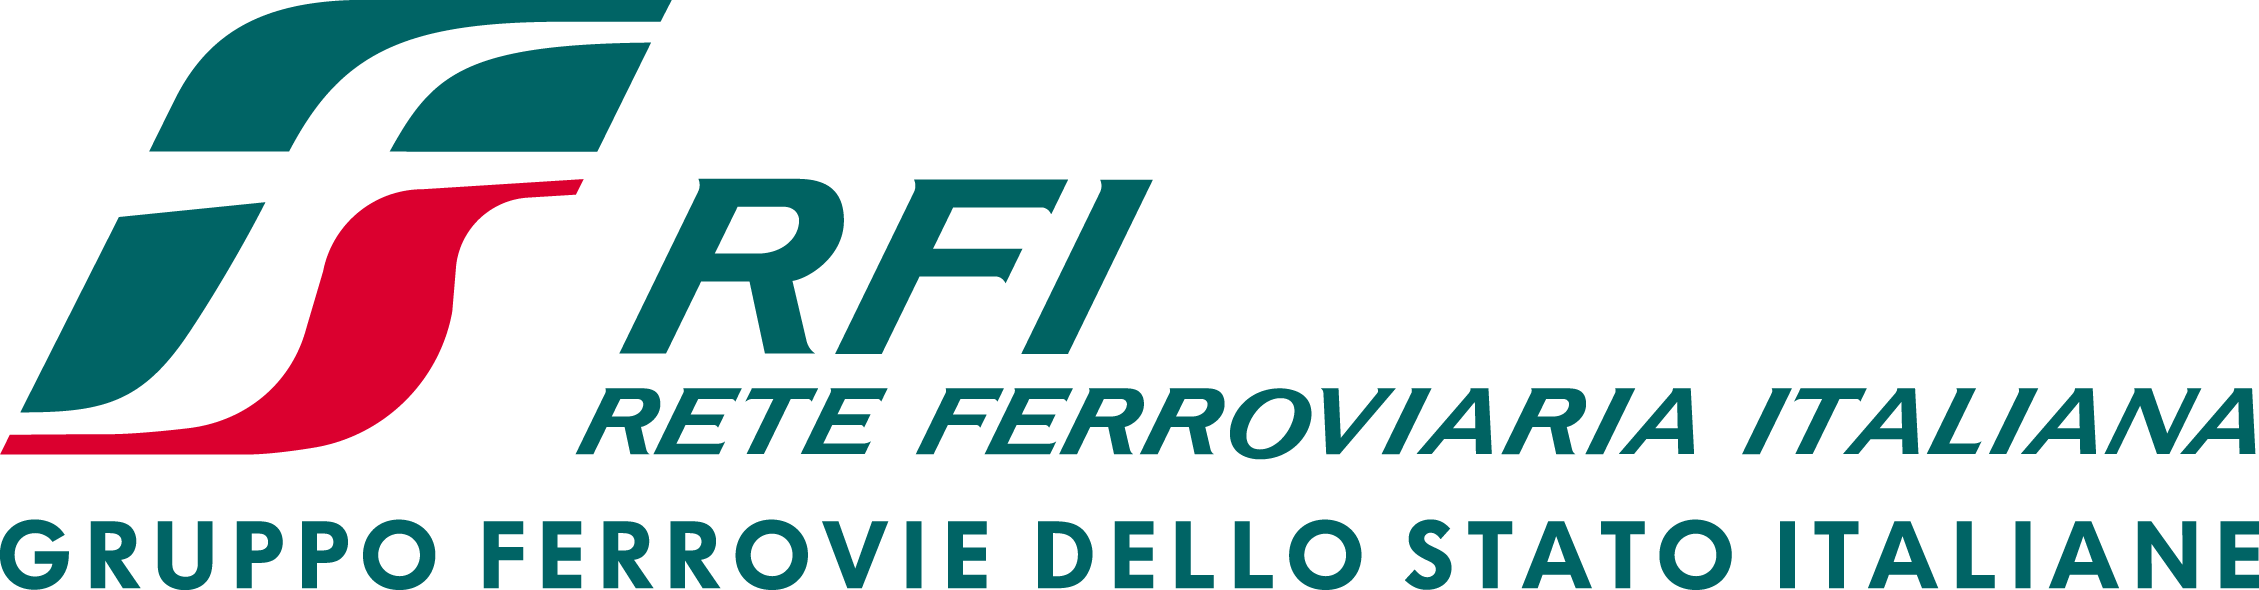 Logo_RFI_ferrovia